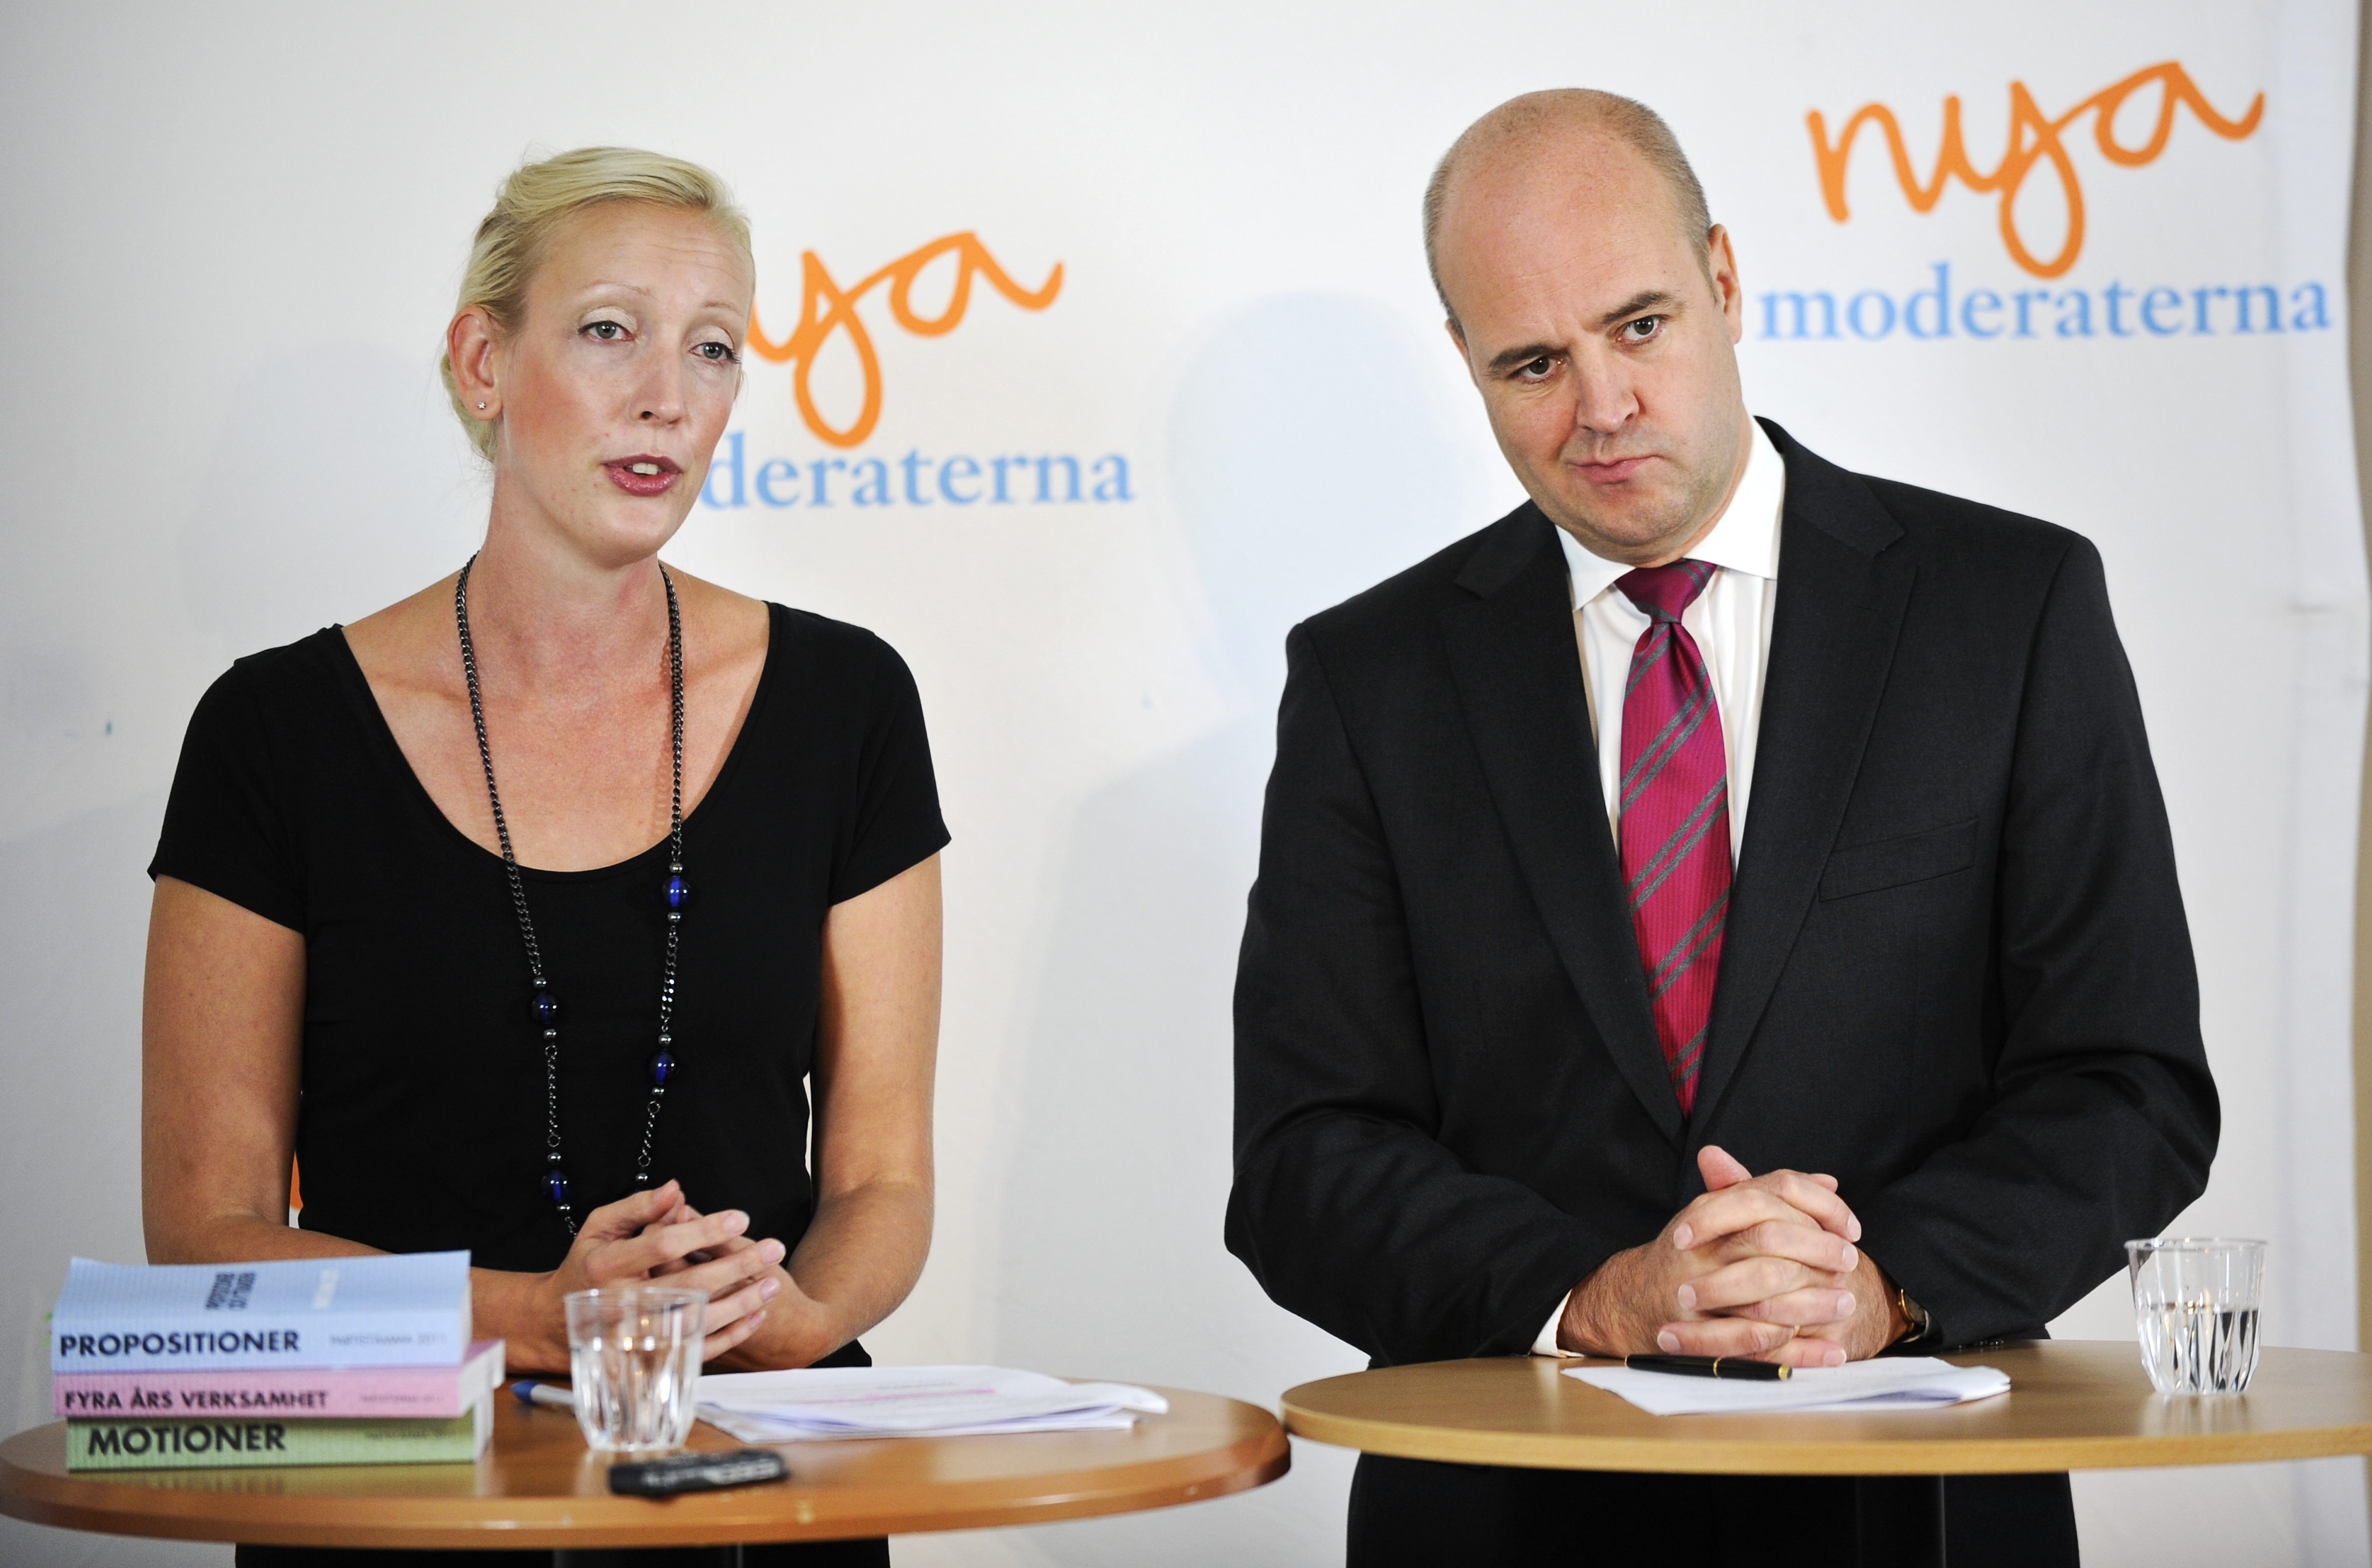 Sofia Arkelsten tillsammans med statsminister Fredrik Reinfeldt.